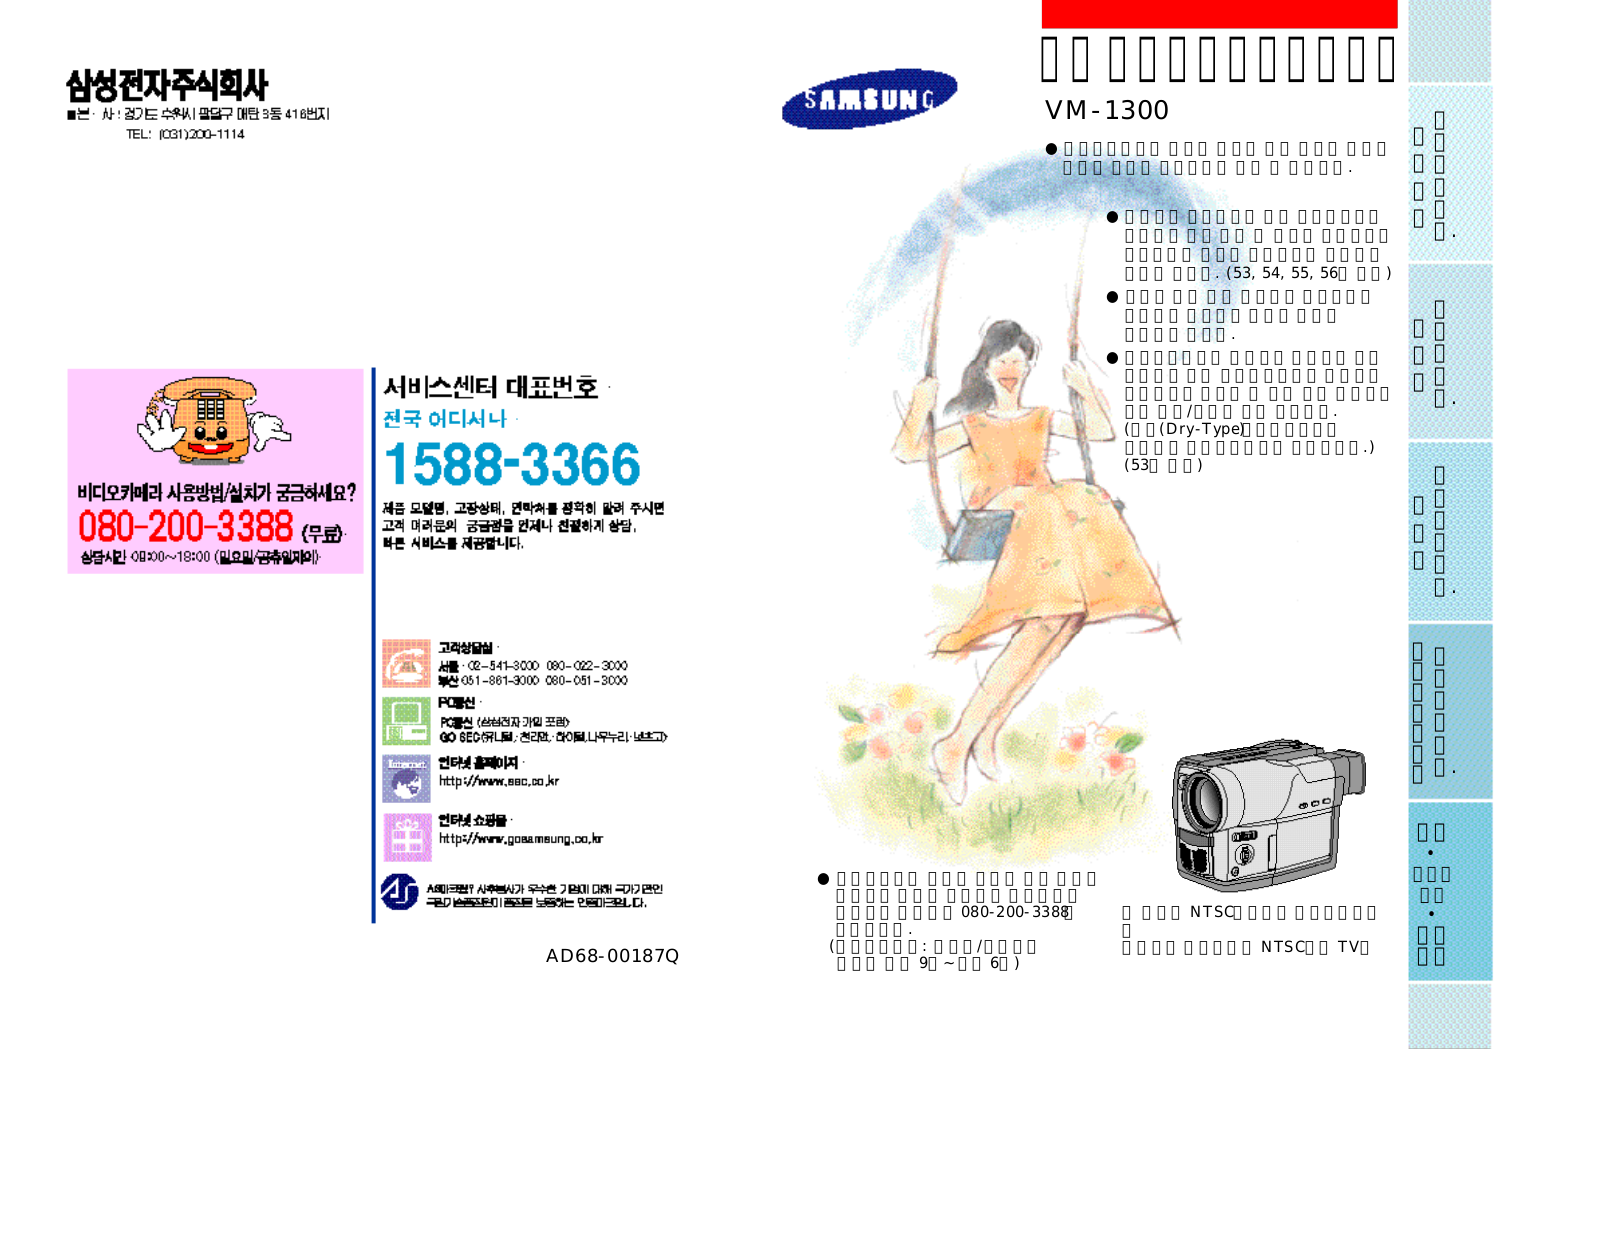 Samsung VM-1300 User Manual